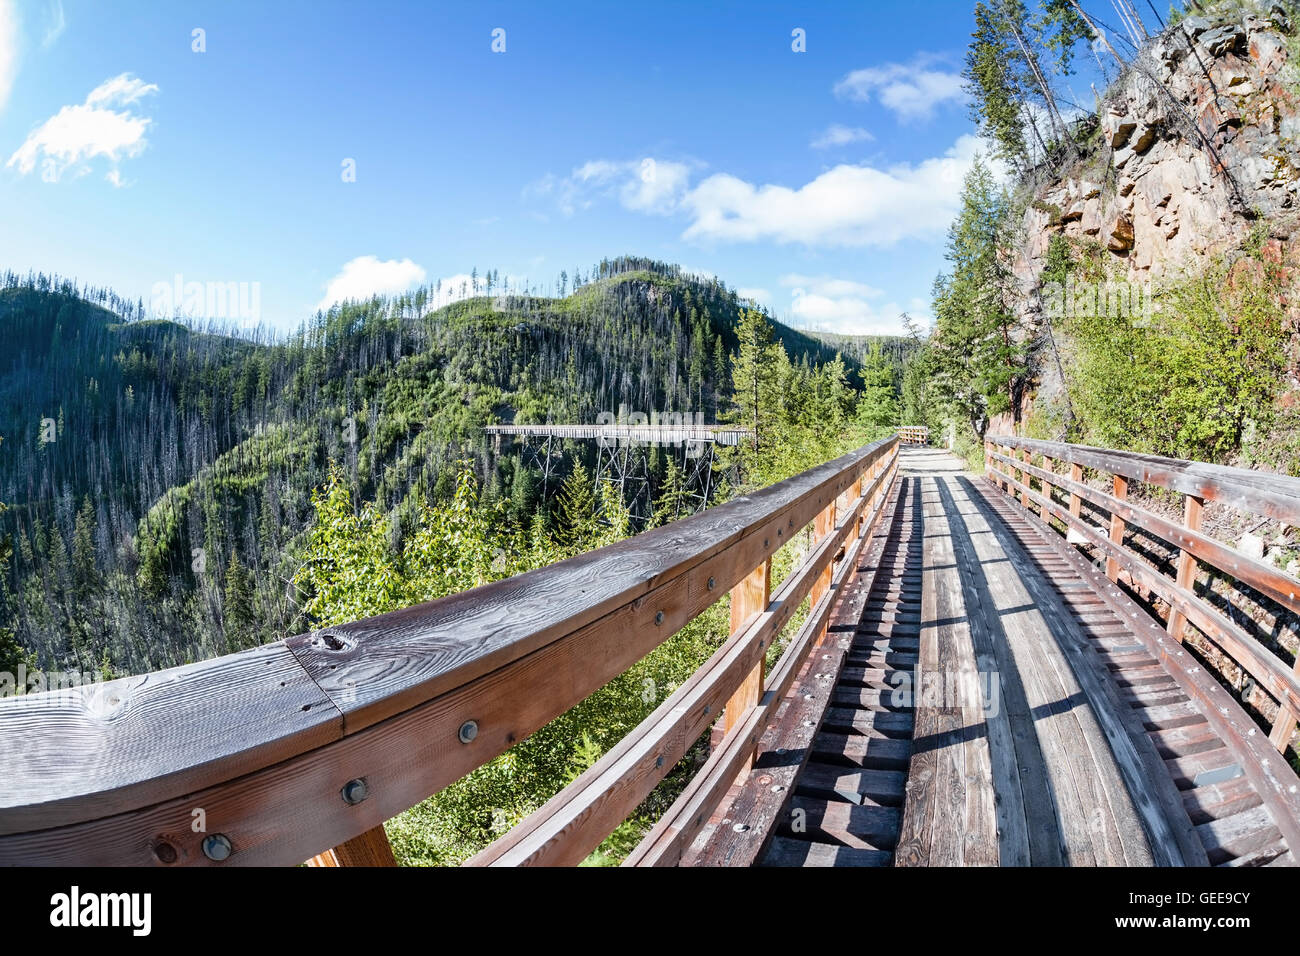 Originariamente uno dei 19 legno tralicci ferroviaria costruita nei primi anni del novecento in Myra Canyon, BC, il luogo è ora un parco pubblico con bi Foto Stock